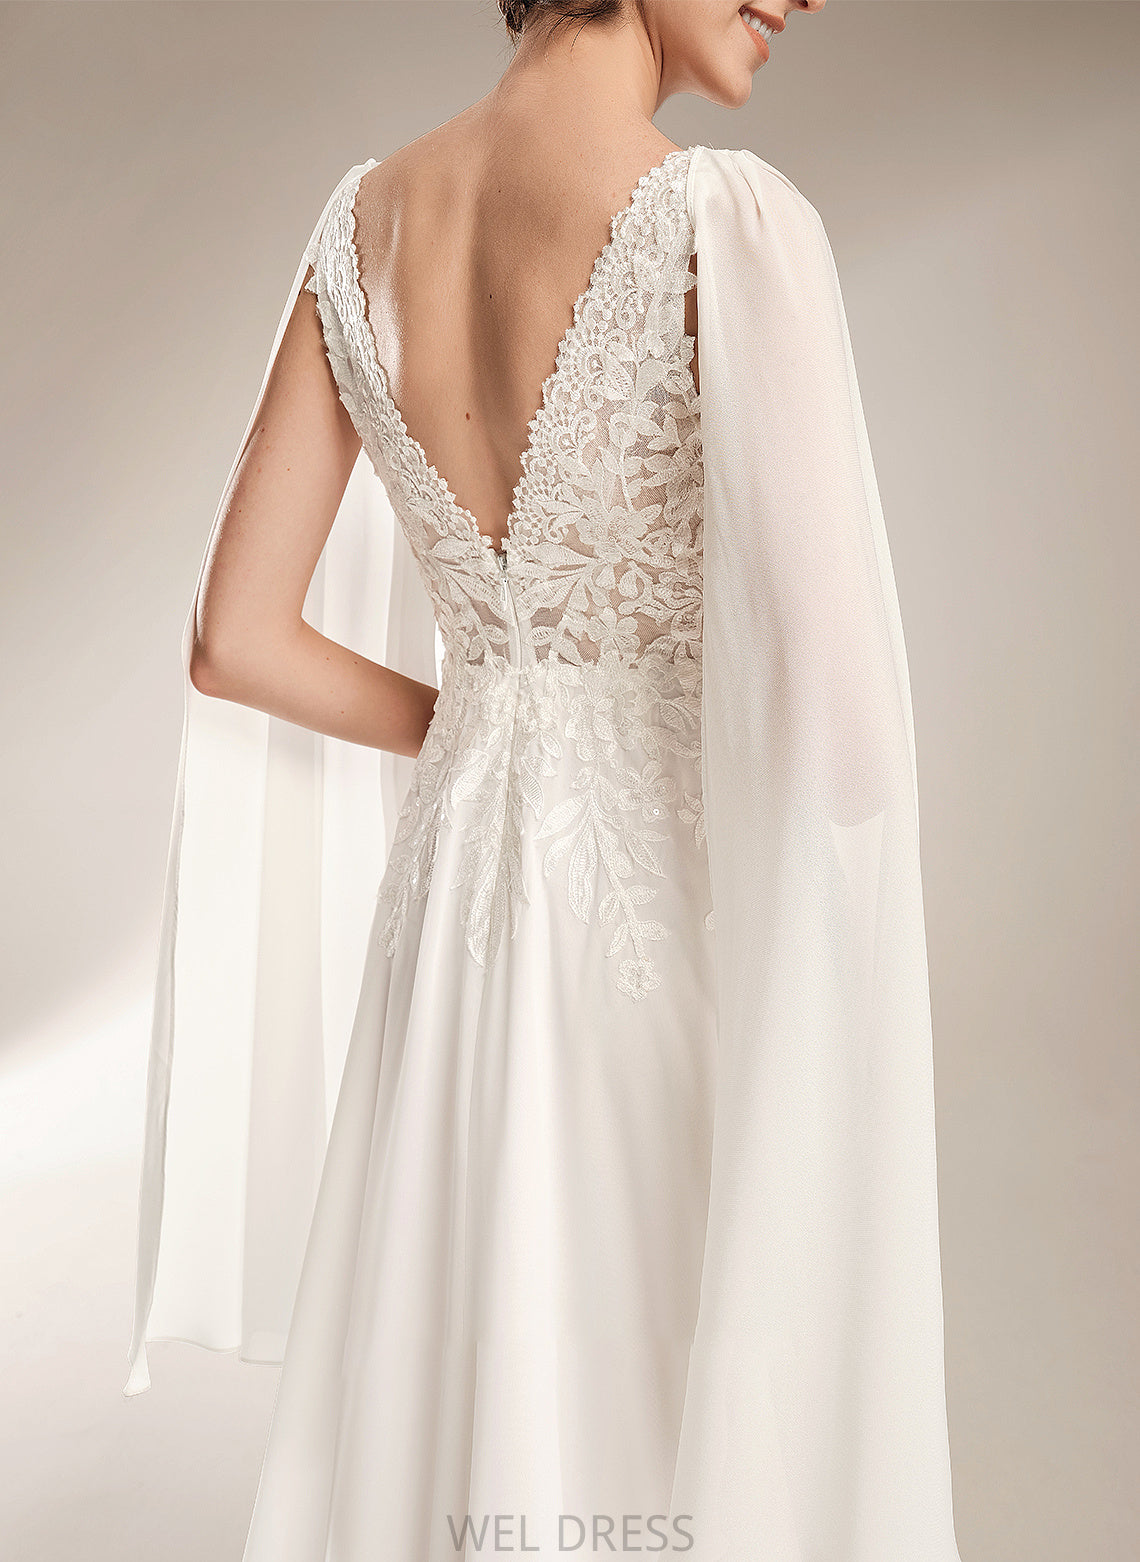 Court Ariana V-neck Wedding Dresses Wedding Dress A-Line Train Sequins With